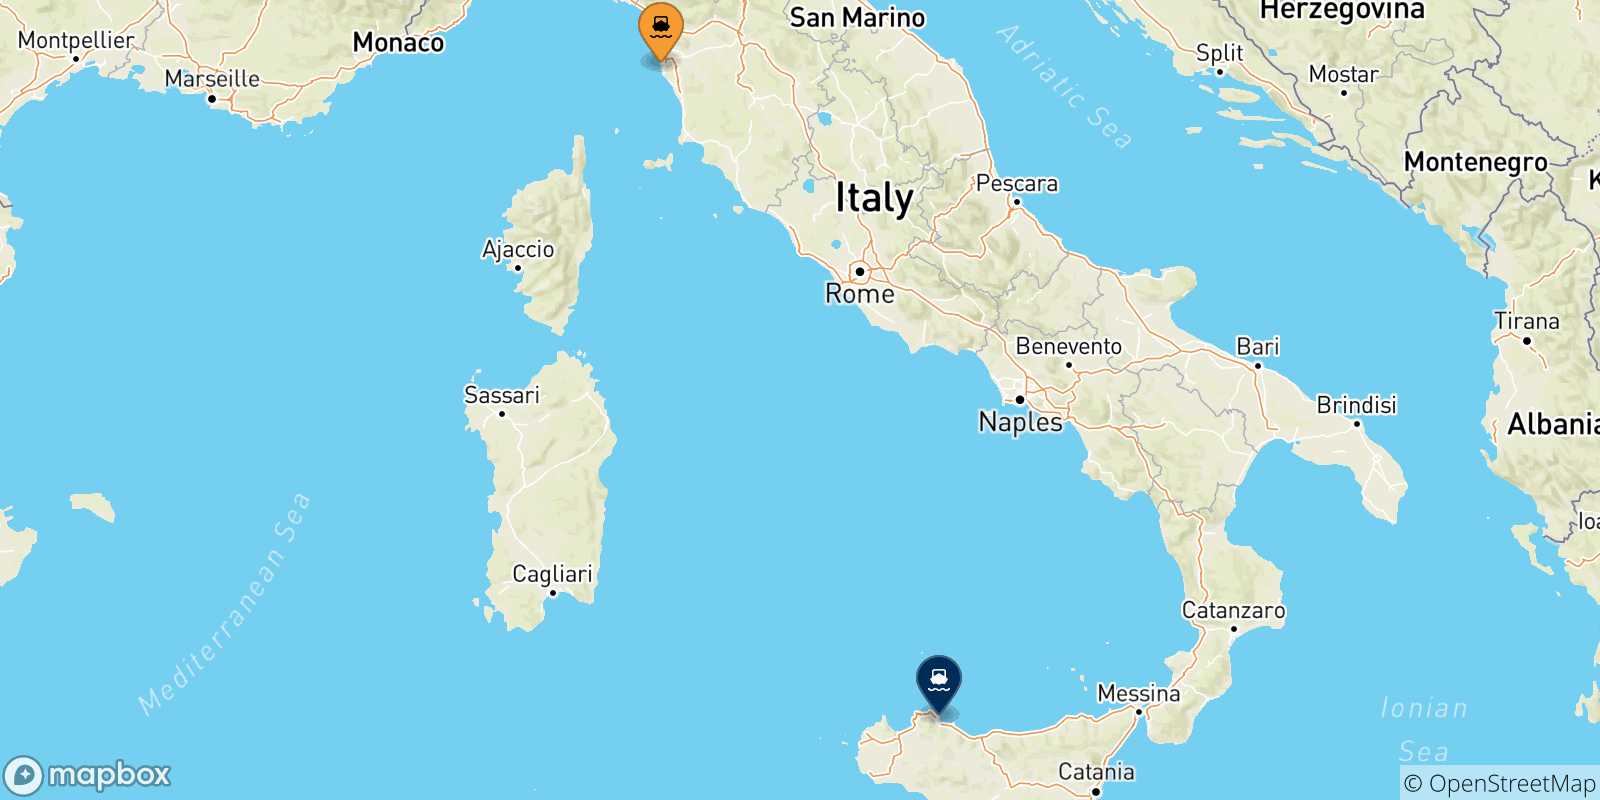 Mappa delle possibili rotte tra Livorno e la Sicilia